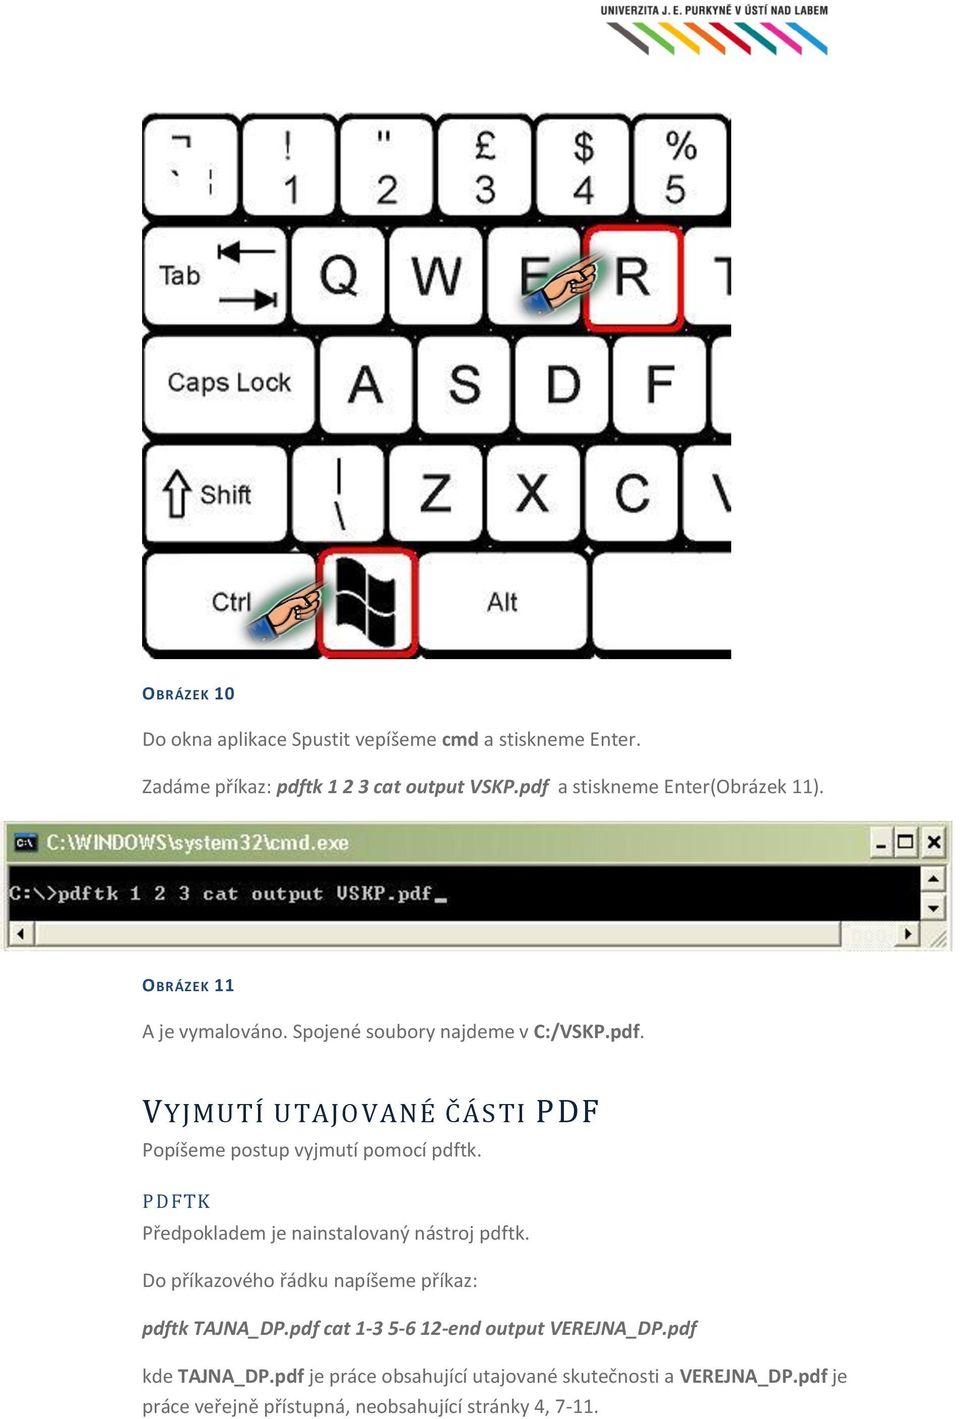 pomocí pdftk PDFTK Předpokladem je nainstalovaný nástroj pdftk Do příkazového řádku napíšeme příkaz: pdftk TAJNA_DPpdf cat 1-3 5-6 12-end